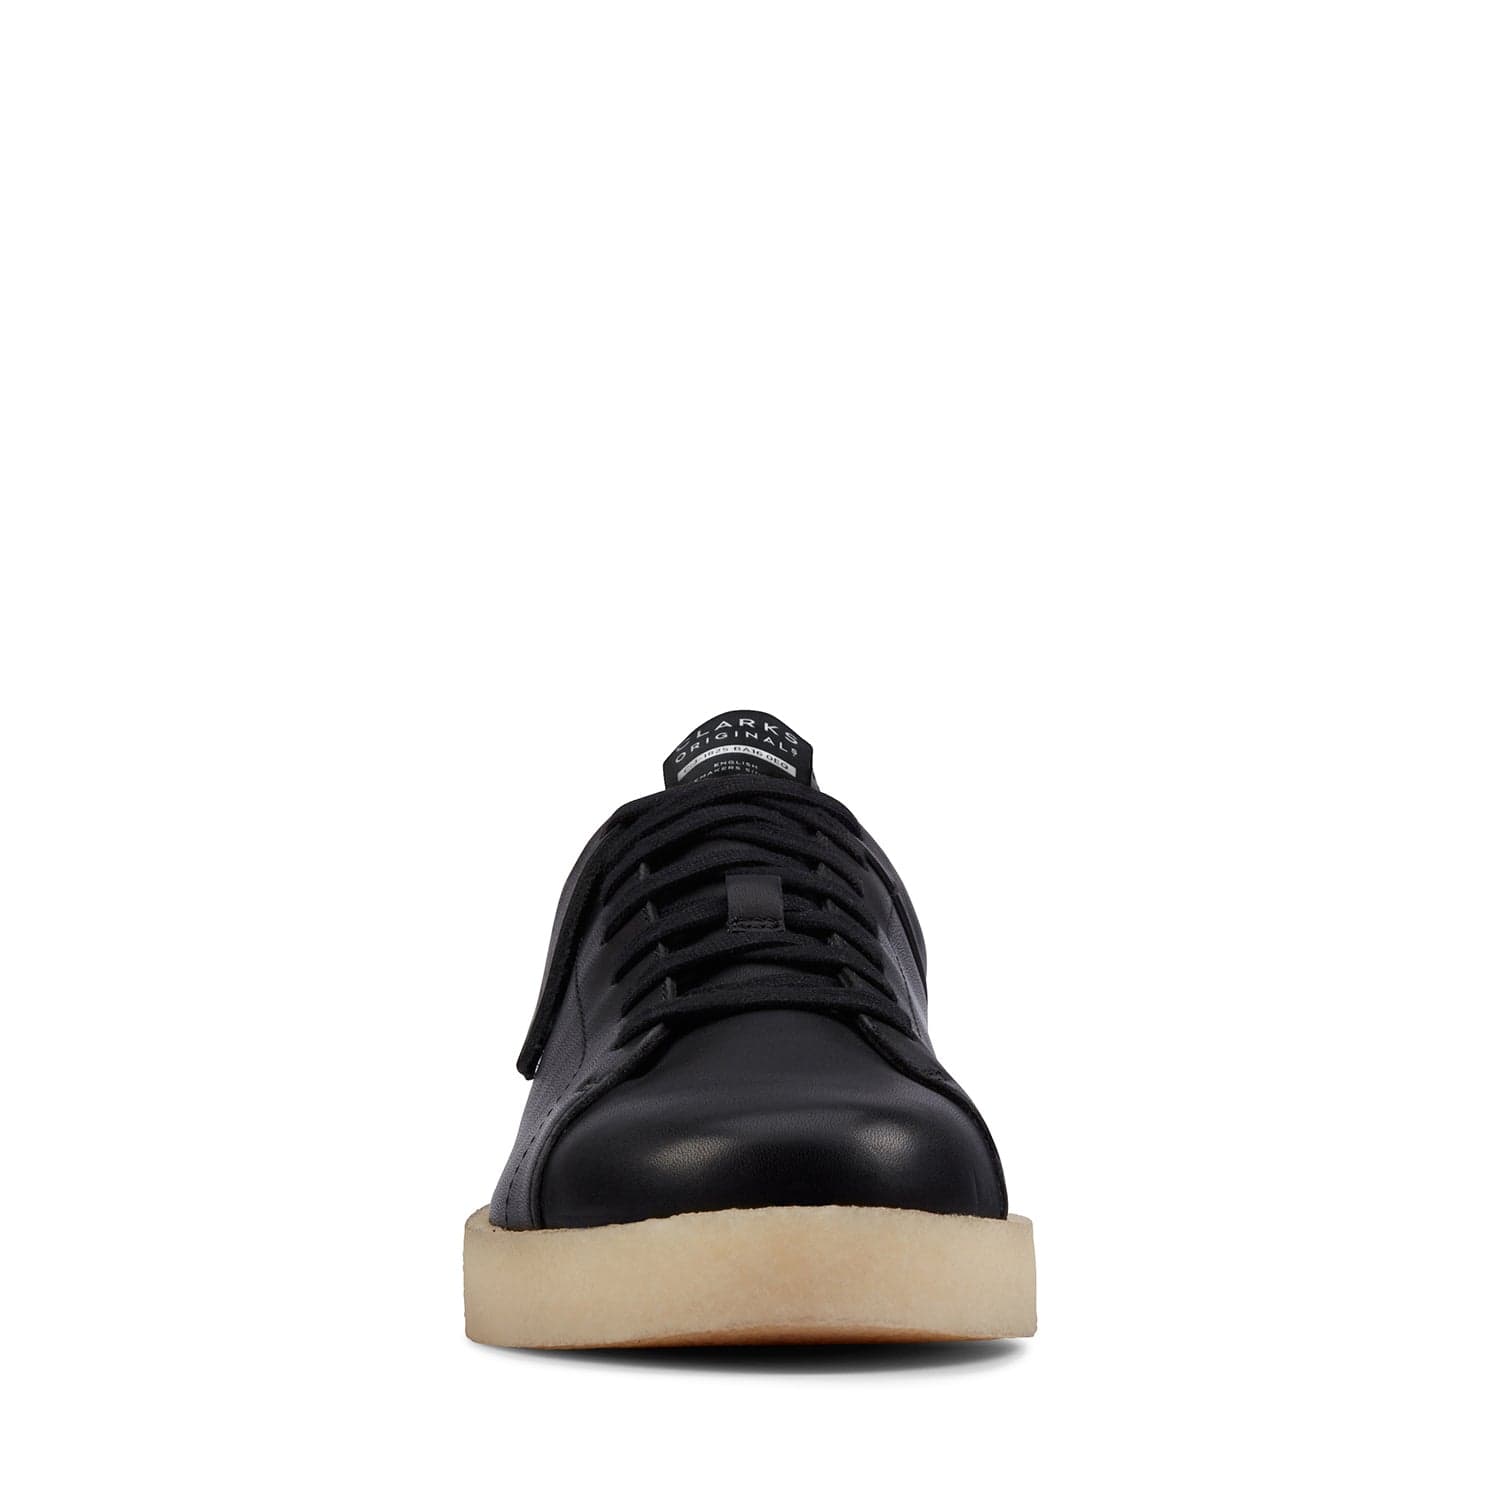 كلاركس تورماتش - أحذية - جلد أسود - 261620607 - عرض G (مقاس قياسي)